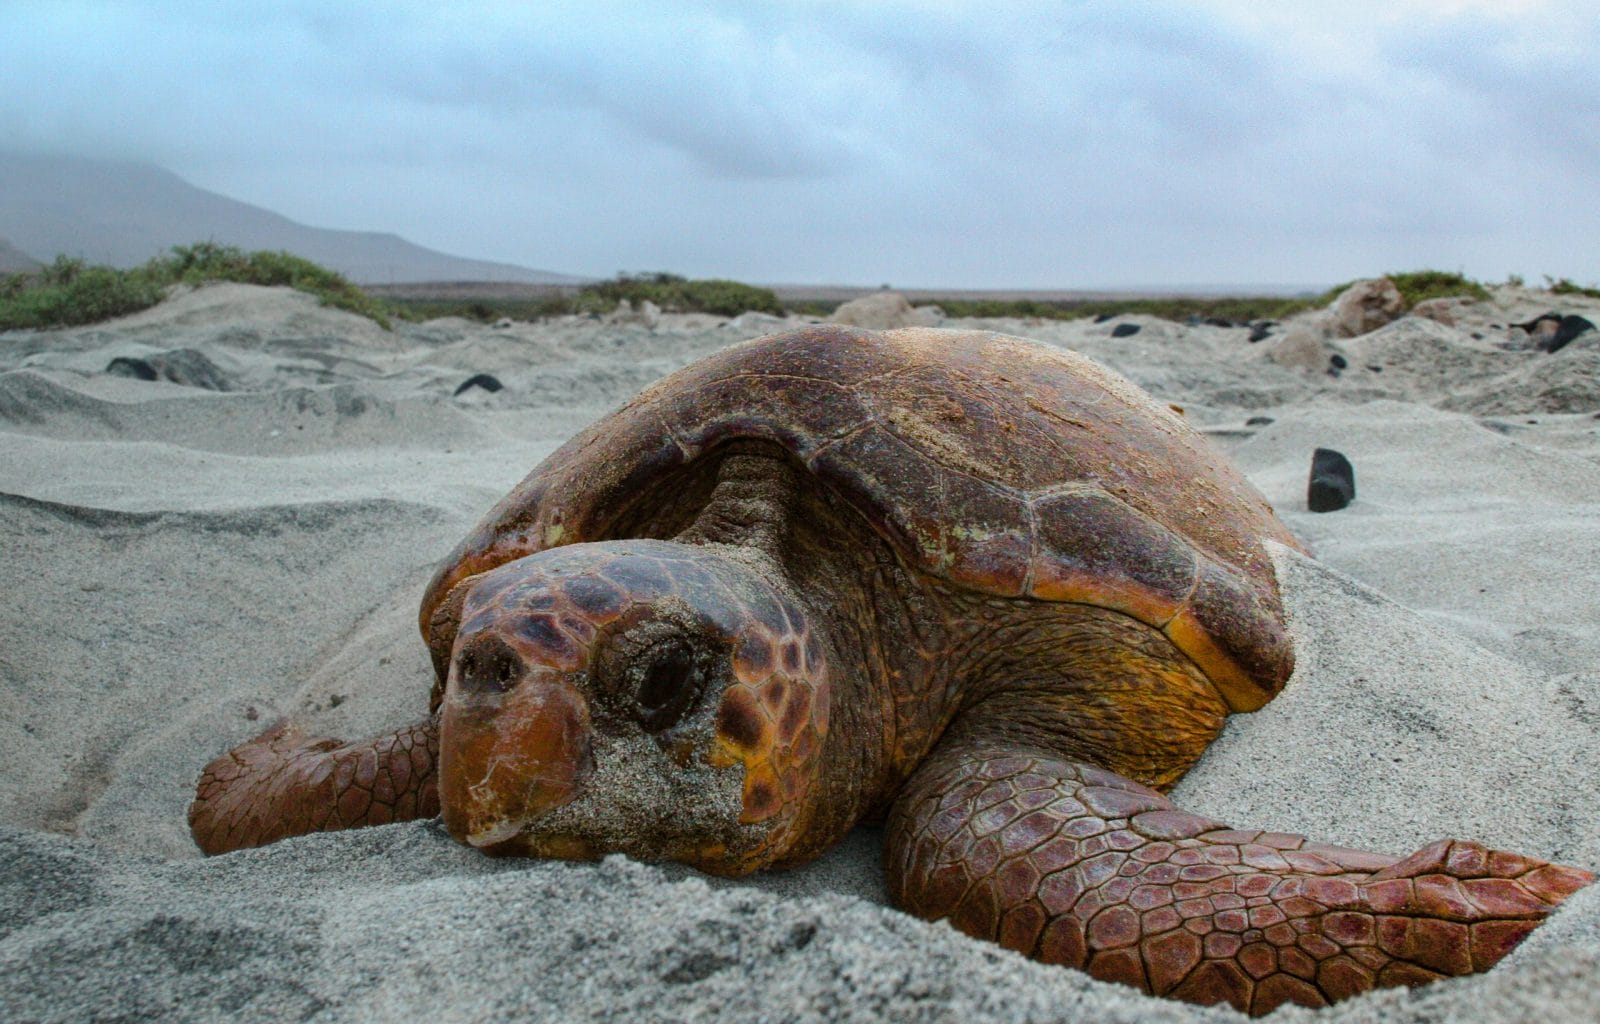 Loggerhead sea turtle nesting on beach